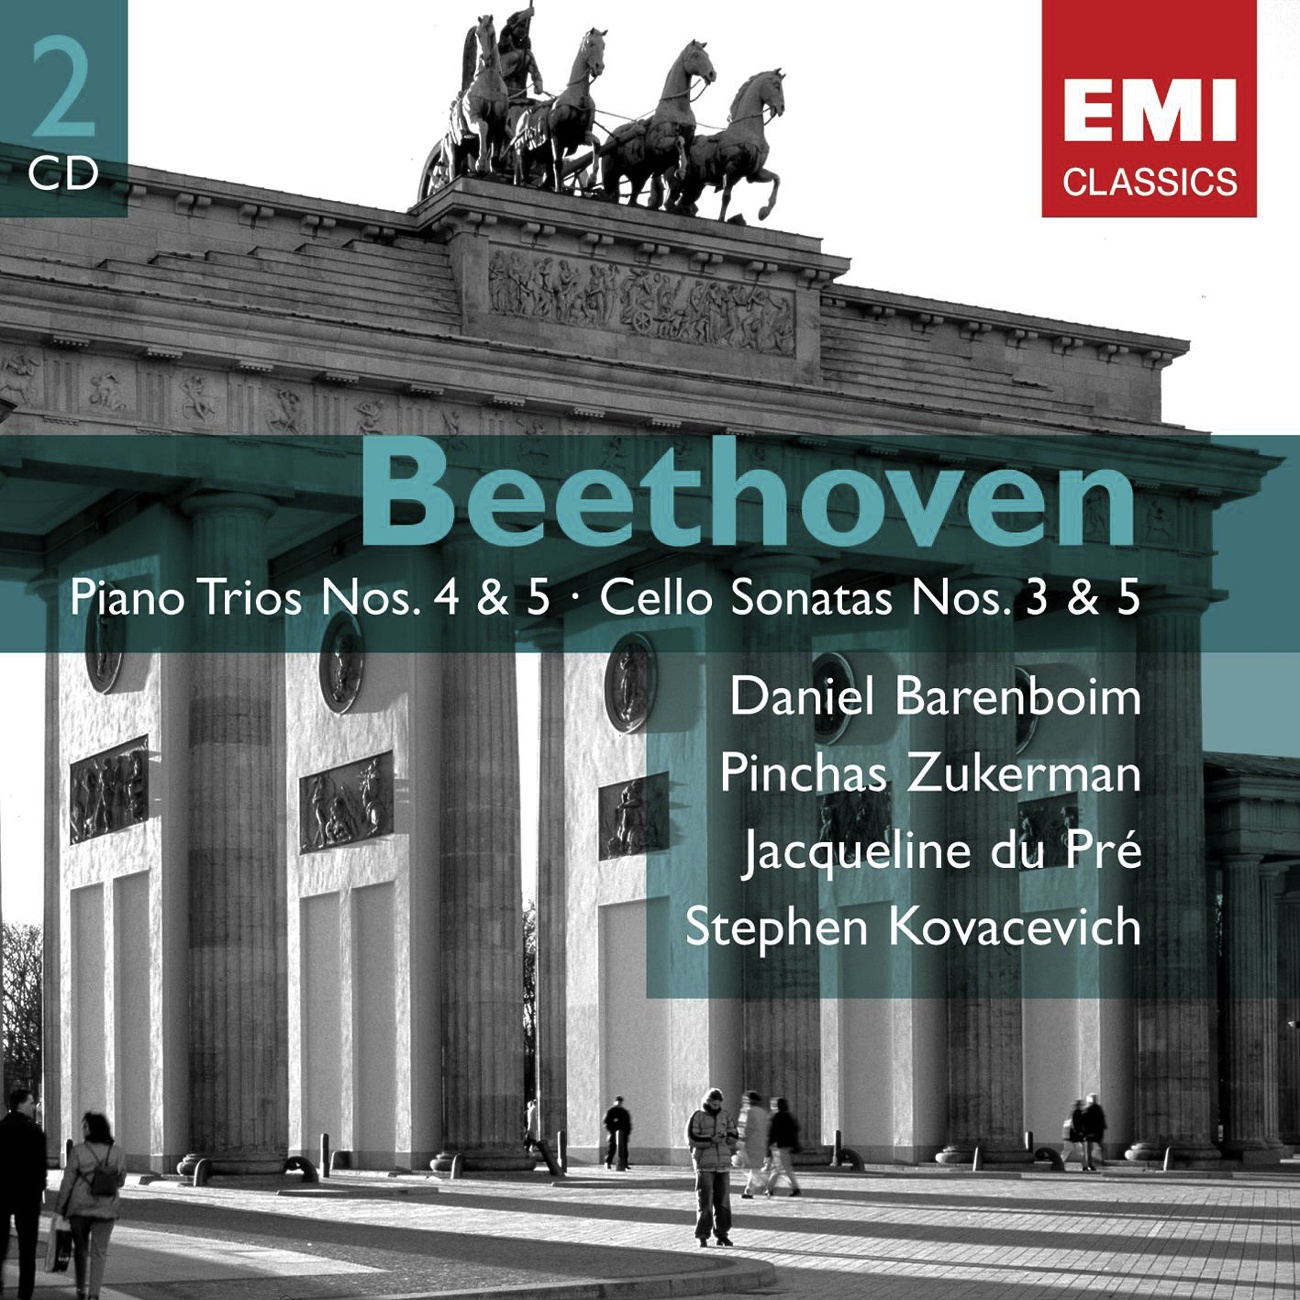 Piano Trio No. 6 in B flat major Op. 70 No. 2 (2001 Digital Remaster): IV. Finale (Allegro)